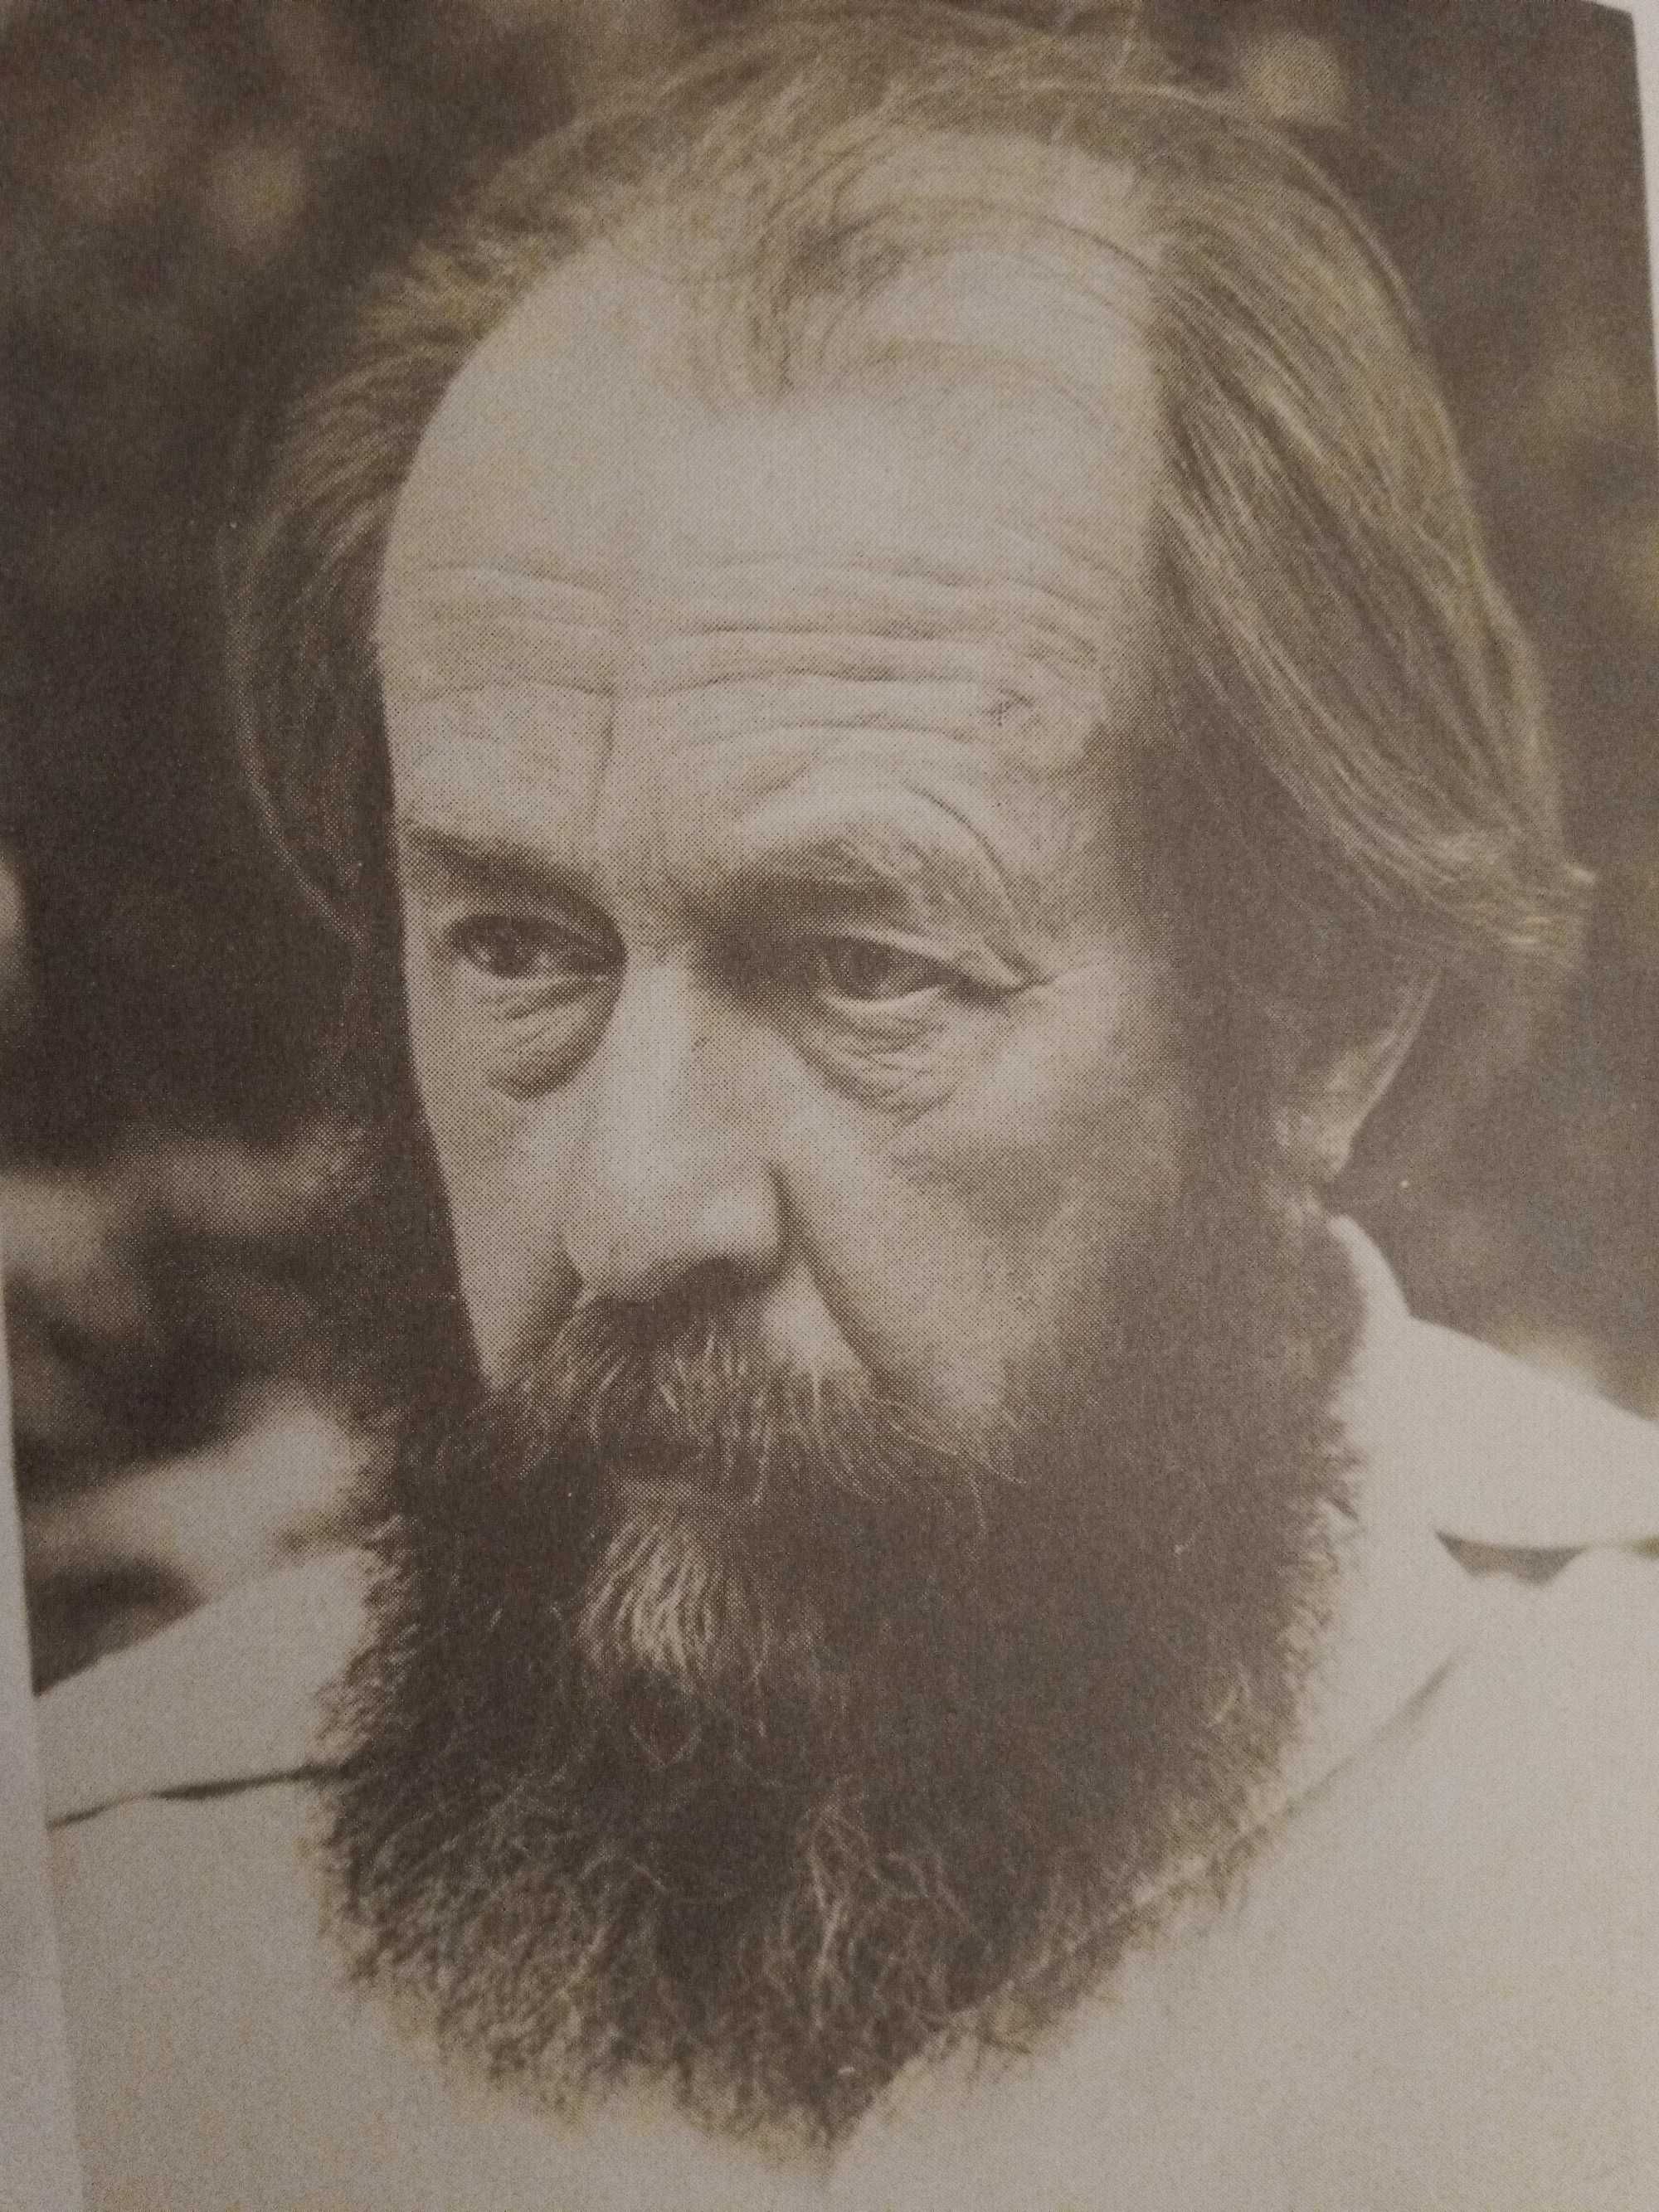 Книга автор А.Солженицын "В круге первом" 1990г